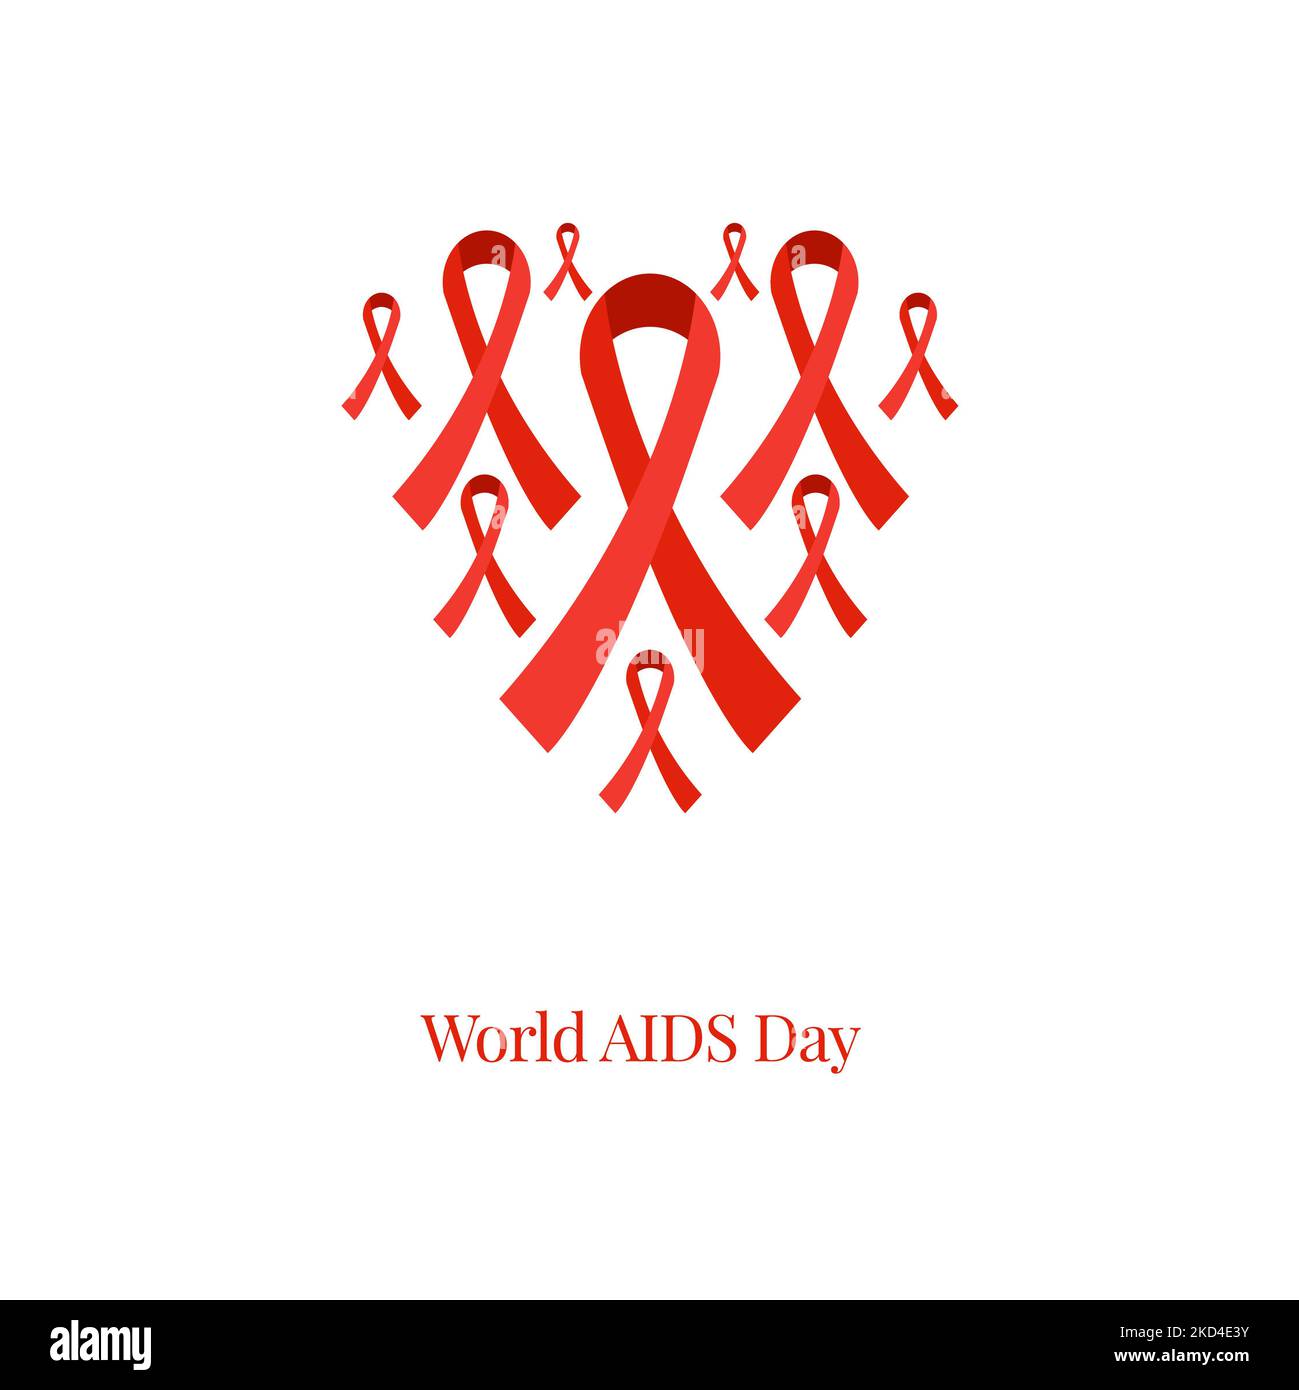 AIDS awareness, conceptual illustration Stock Photo